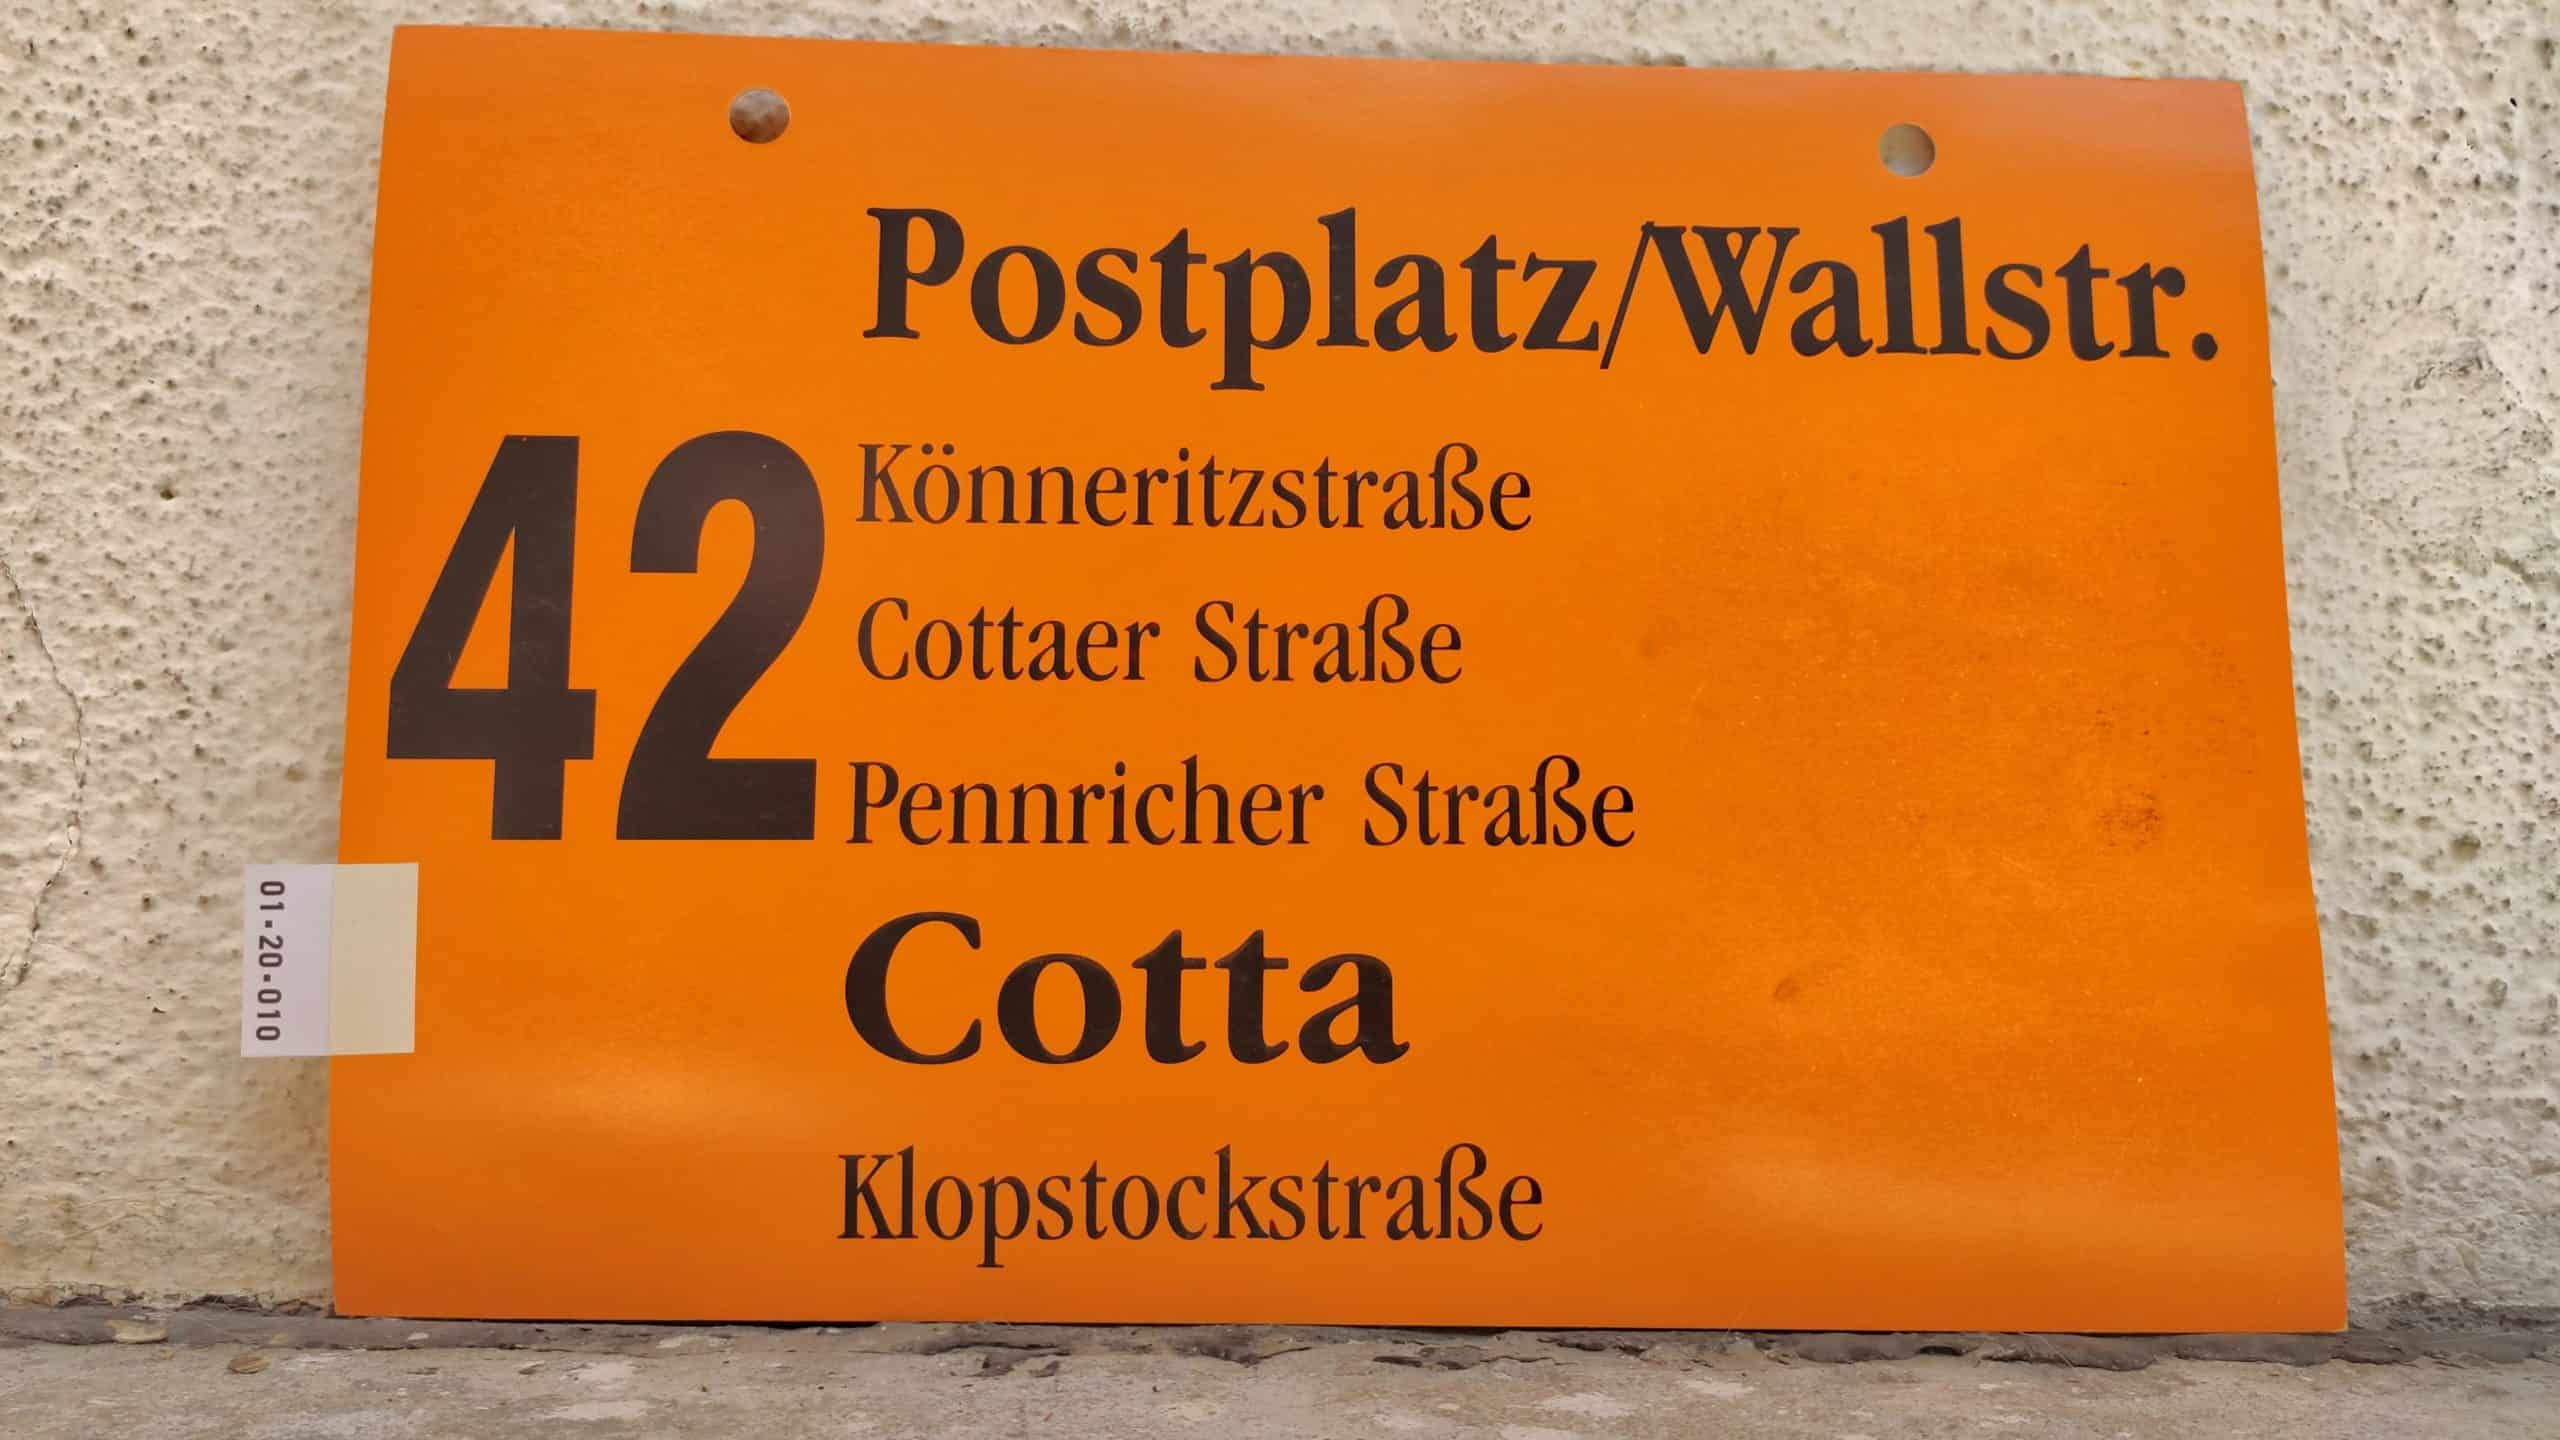 42 Postplatz/Wallstr. – Cotta Klopstockstraße